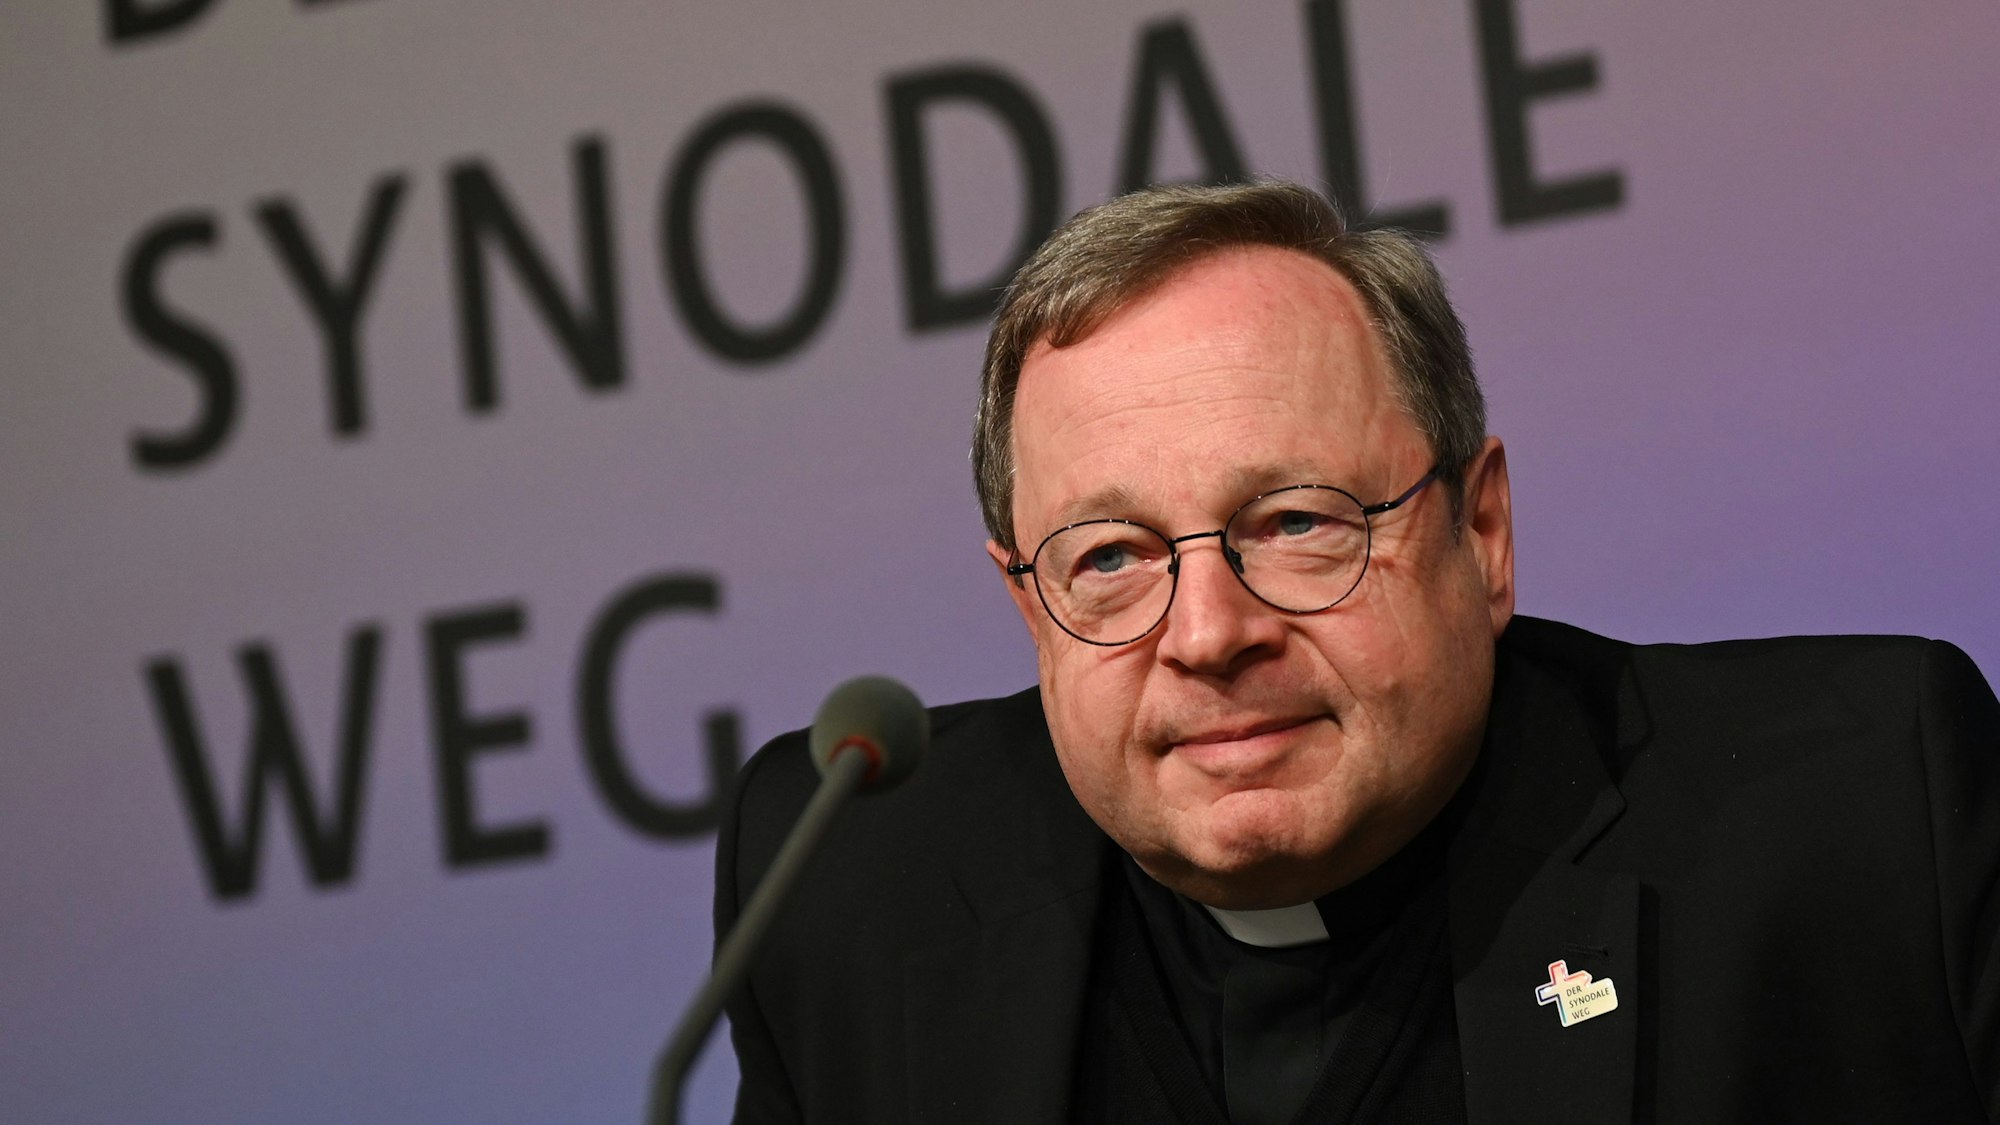 Georg Bätzing, Bischof von Limburg und Vorsitzender der Deutschen Bischofskonferenz, kommt vor Beginn der Synodalversammlung zu einer Pressekonferenz.